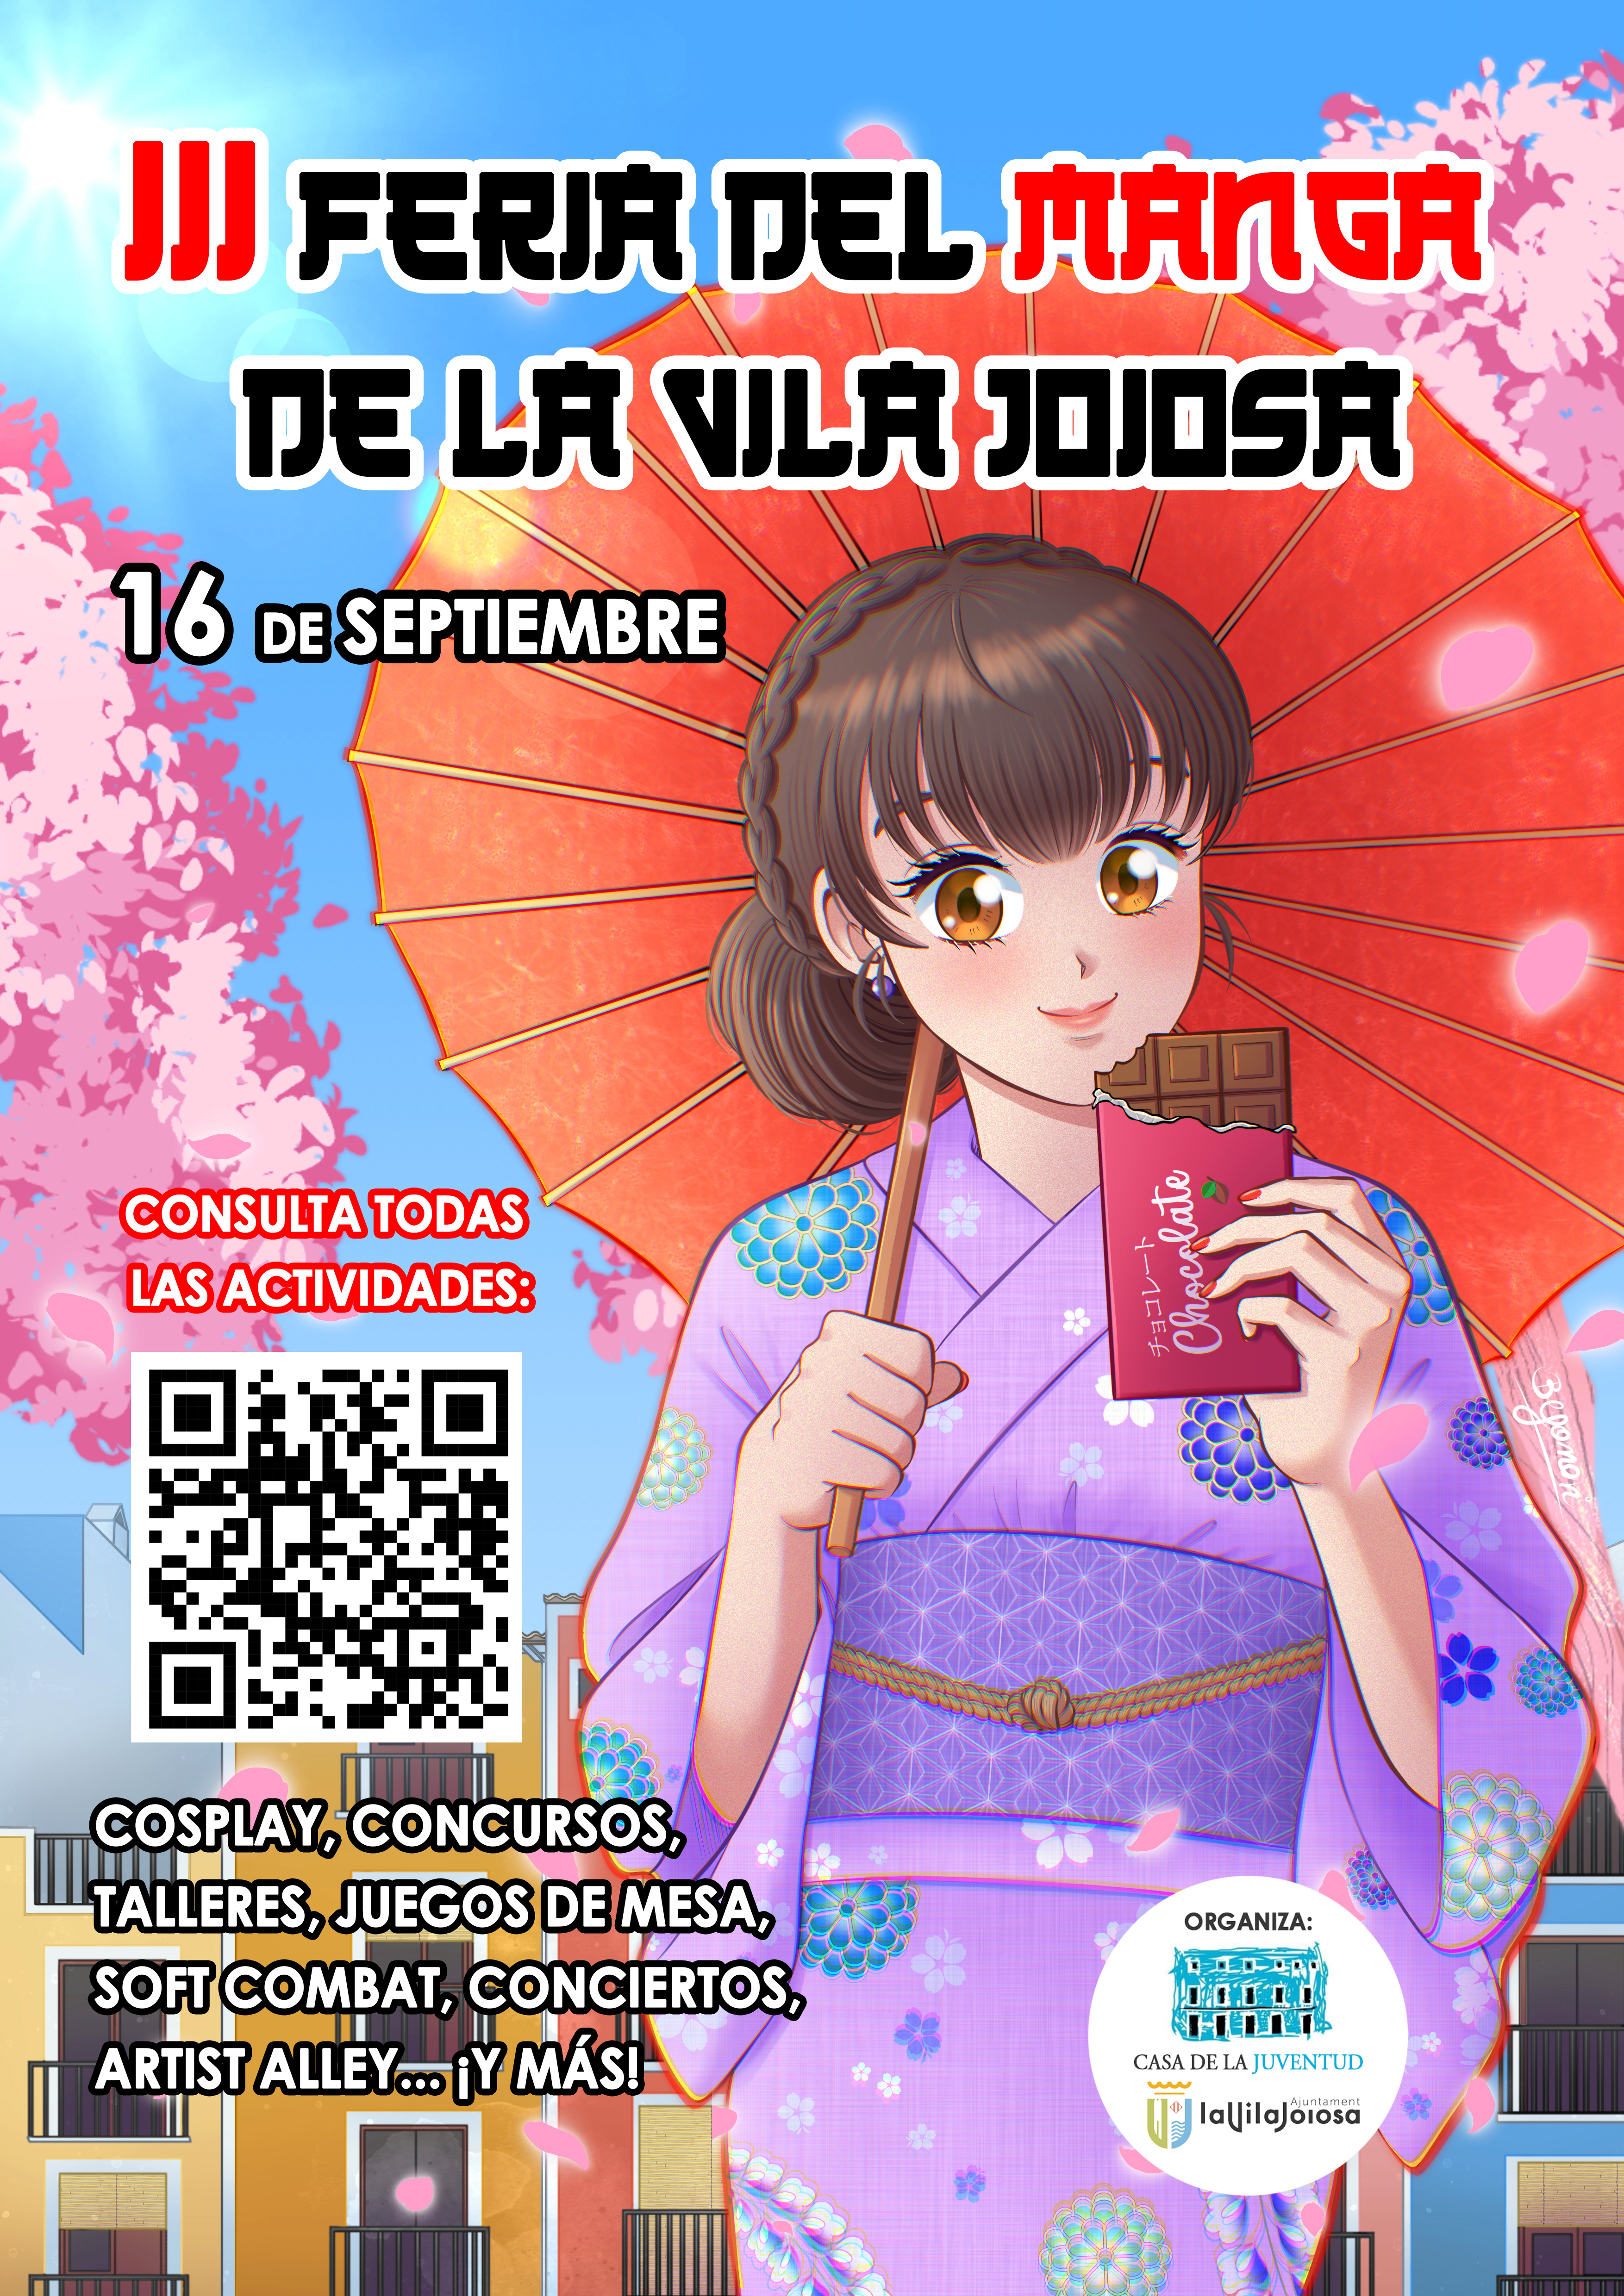 La Feria del Manga y Cultura Japonesa vuelve a Villajoyosa en septiembre